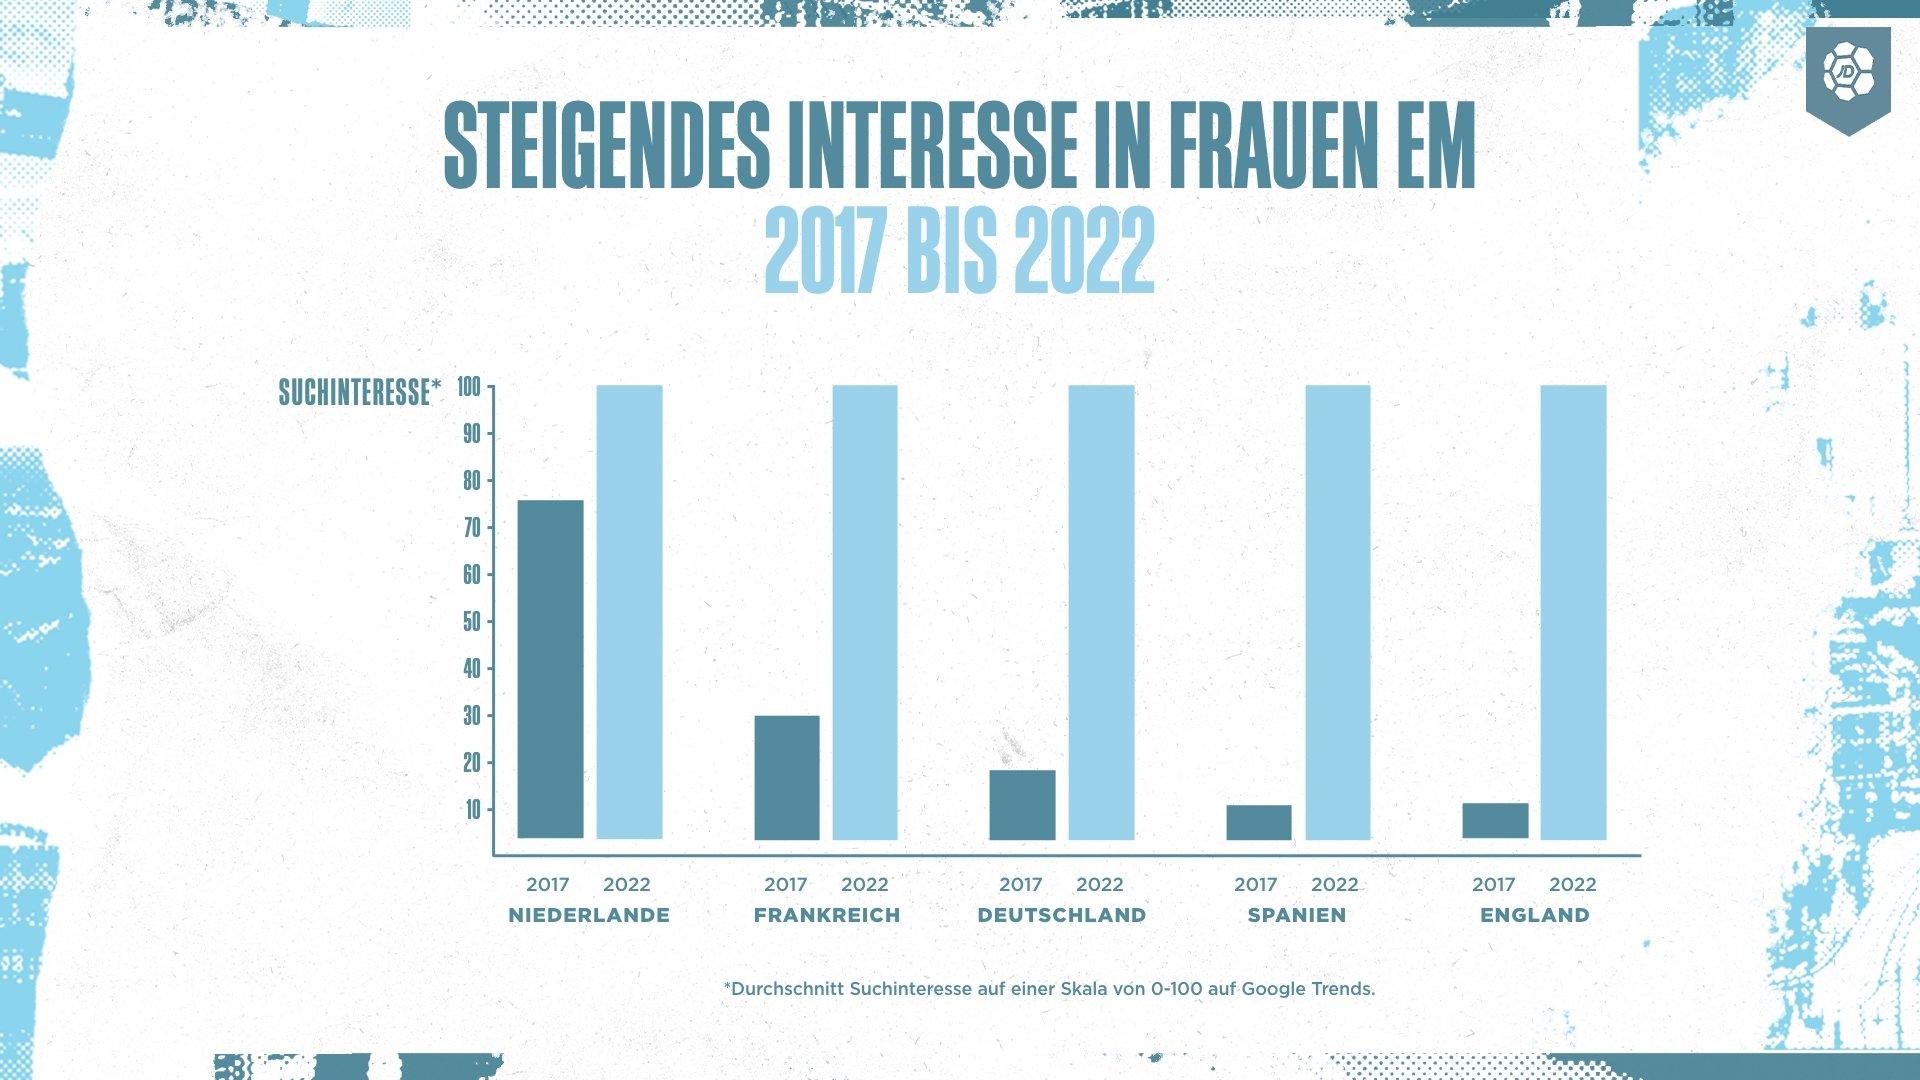 Balkendiagramm: Steigendes Suchinteresse in die Frauen EM 2017 bis 2022 